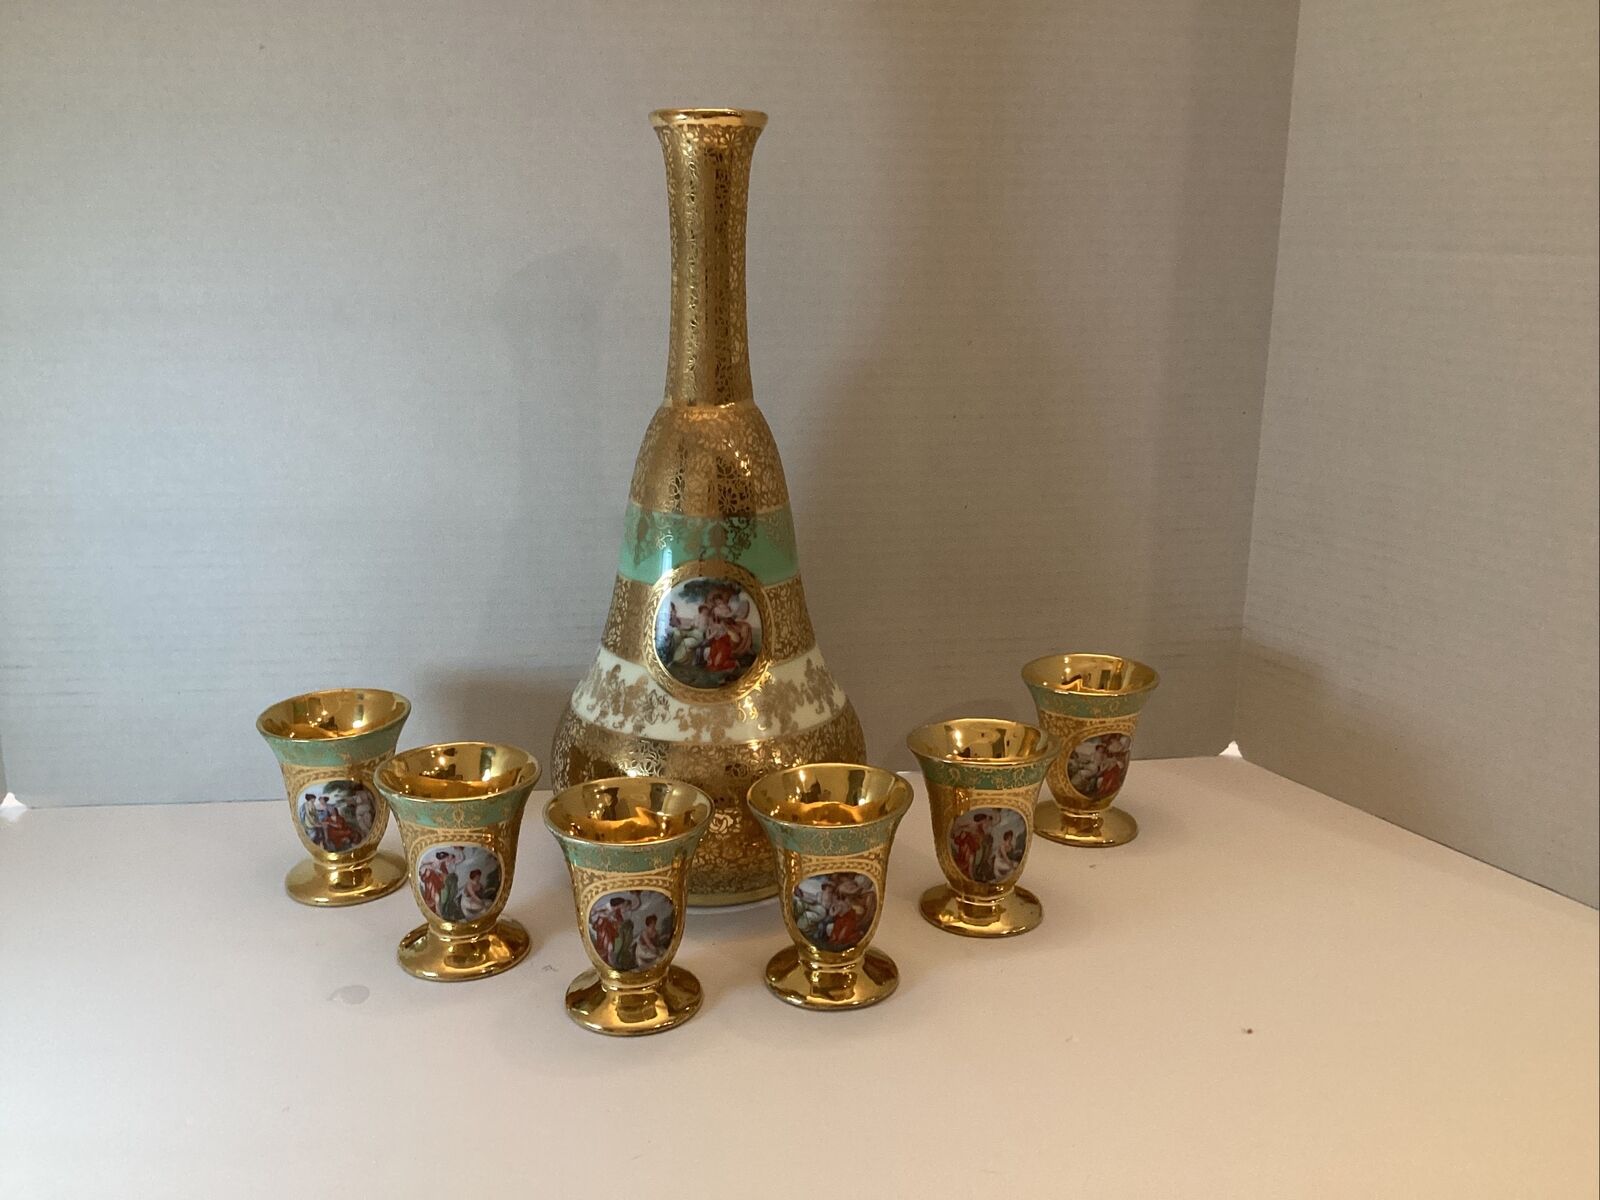 Le Mieux 24 Karat Gold Hand Decorated Porcelain Decanter & Cordial 6 Glasses.